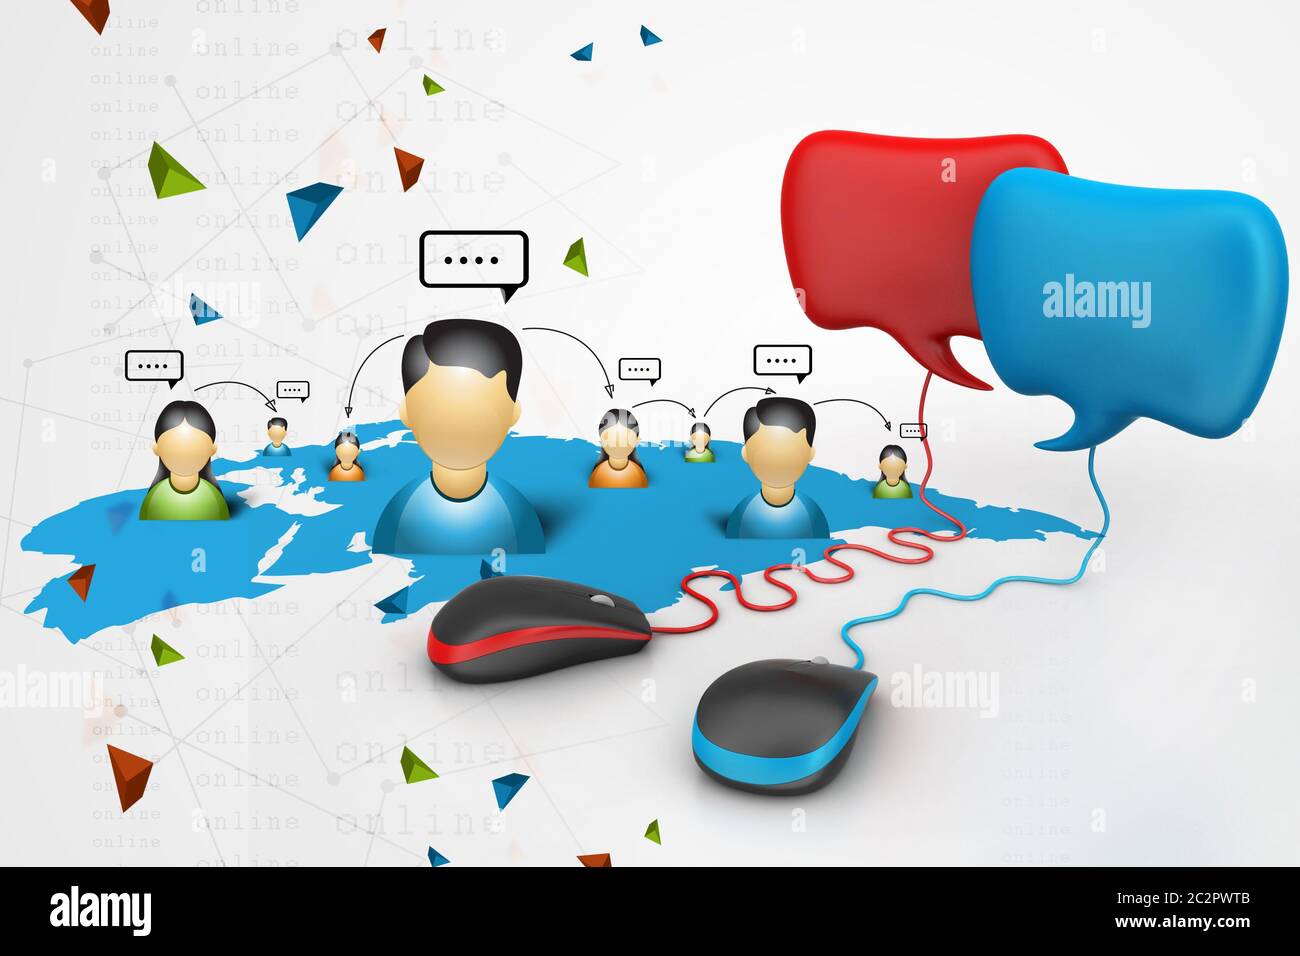 Sprechen Blasen mit Maus angeschlossen, soziale Netzwerk Konzept Stockfoto